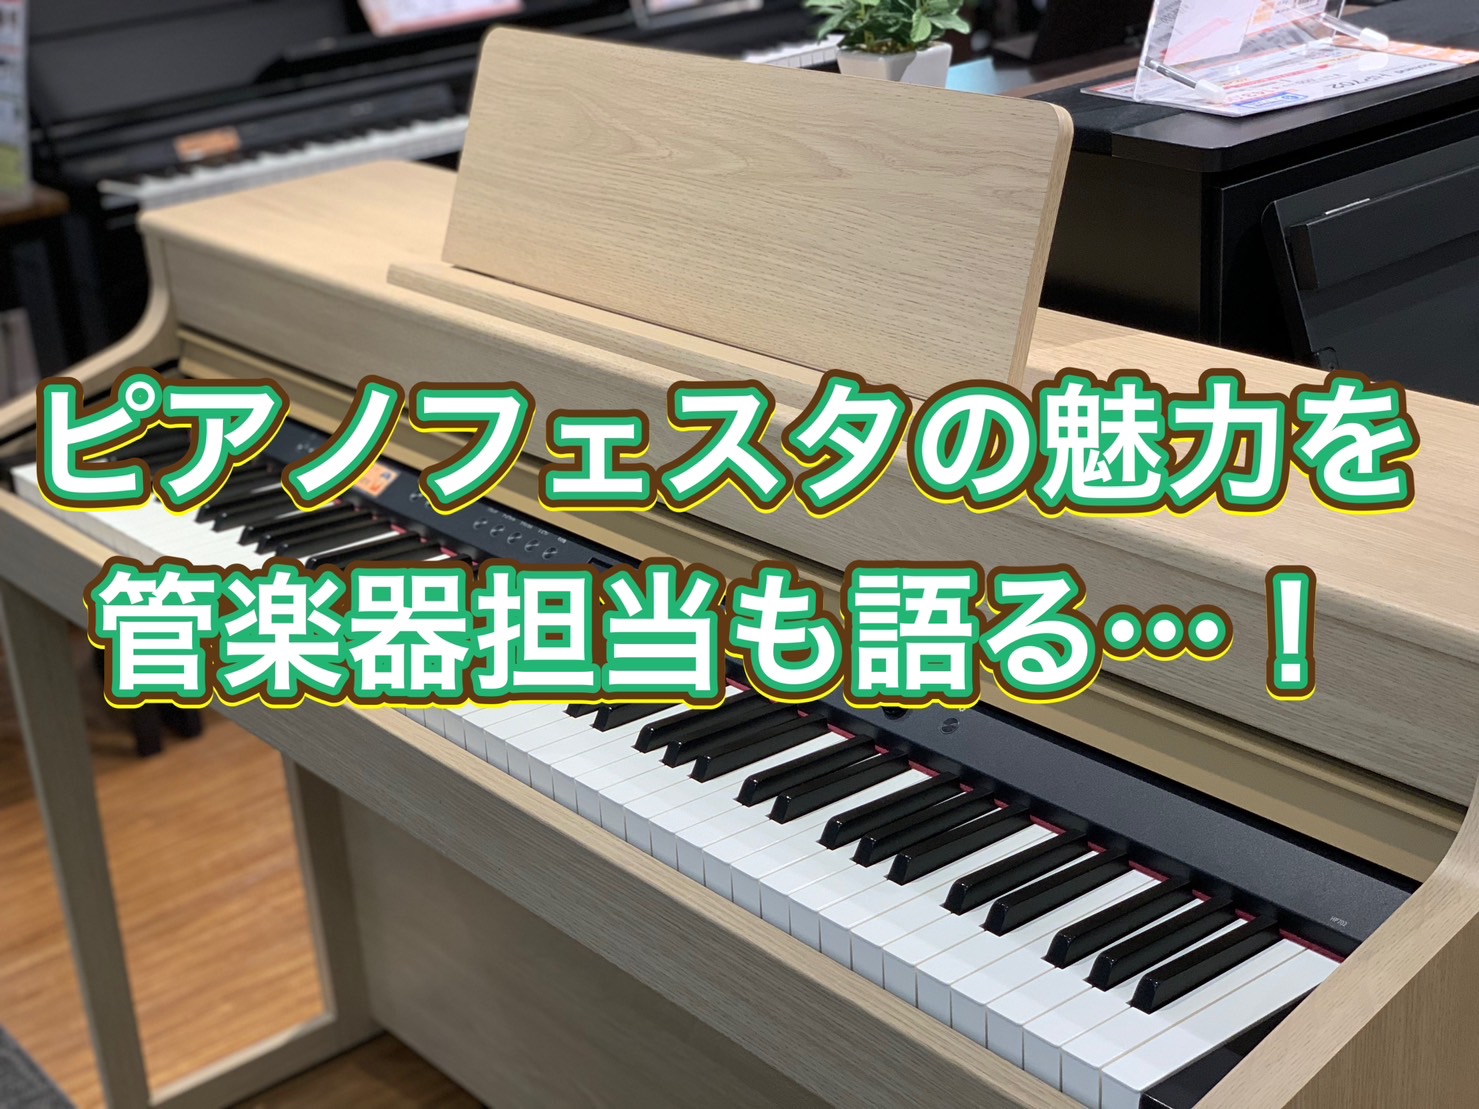 皆様！こんにちは。さて。Vol.8までいきました『管楽器担当の音楽通信』G7サミットで広島が盛り上がっているところですが・・！広島府中店が大きく盛り上がるのは来週・・・ そう！ピアノフェスタが開催されます！！ ピアノフェスタ詳細はこちら！！3月に異動してきてばかりというのは既に書かせて頂きましたので […]